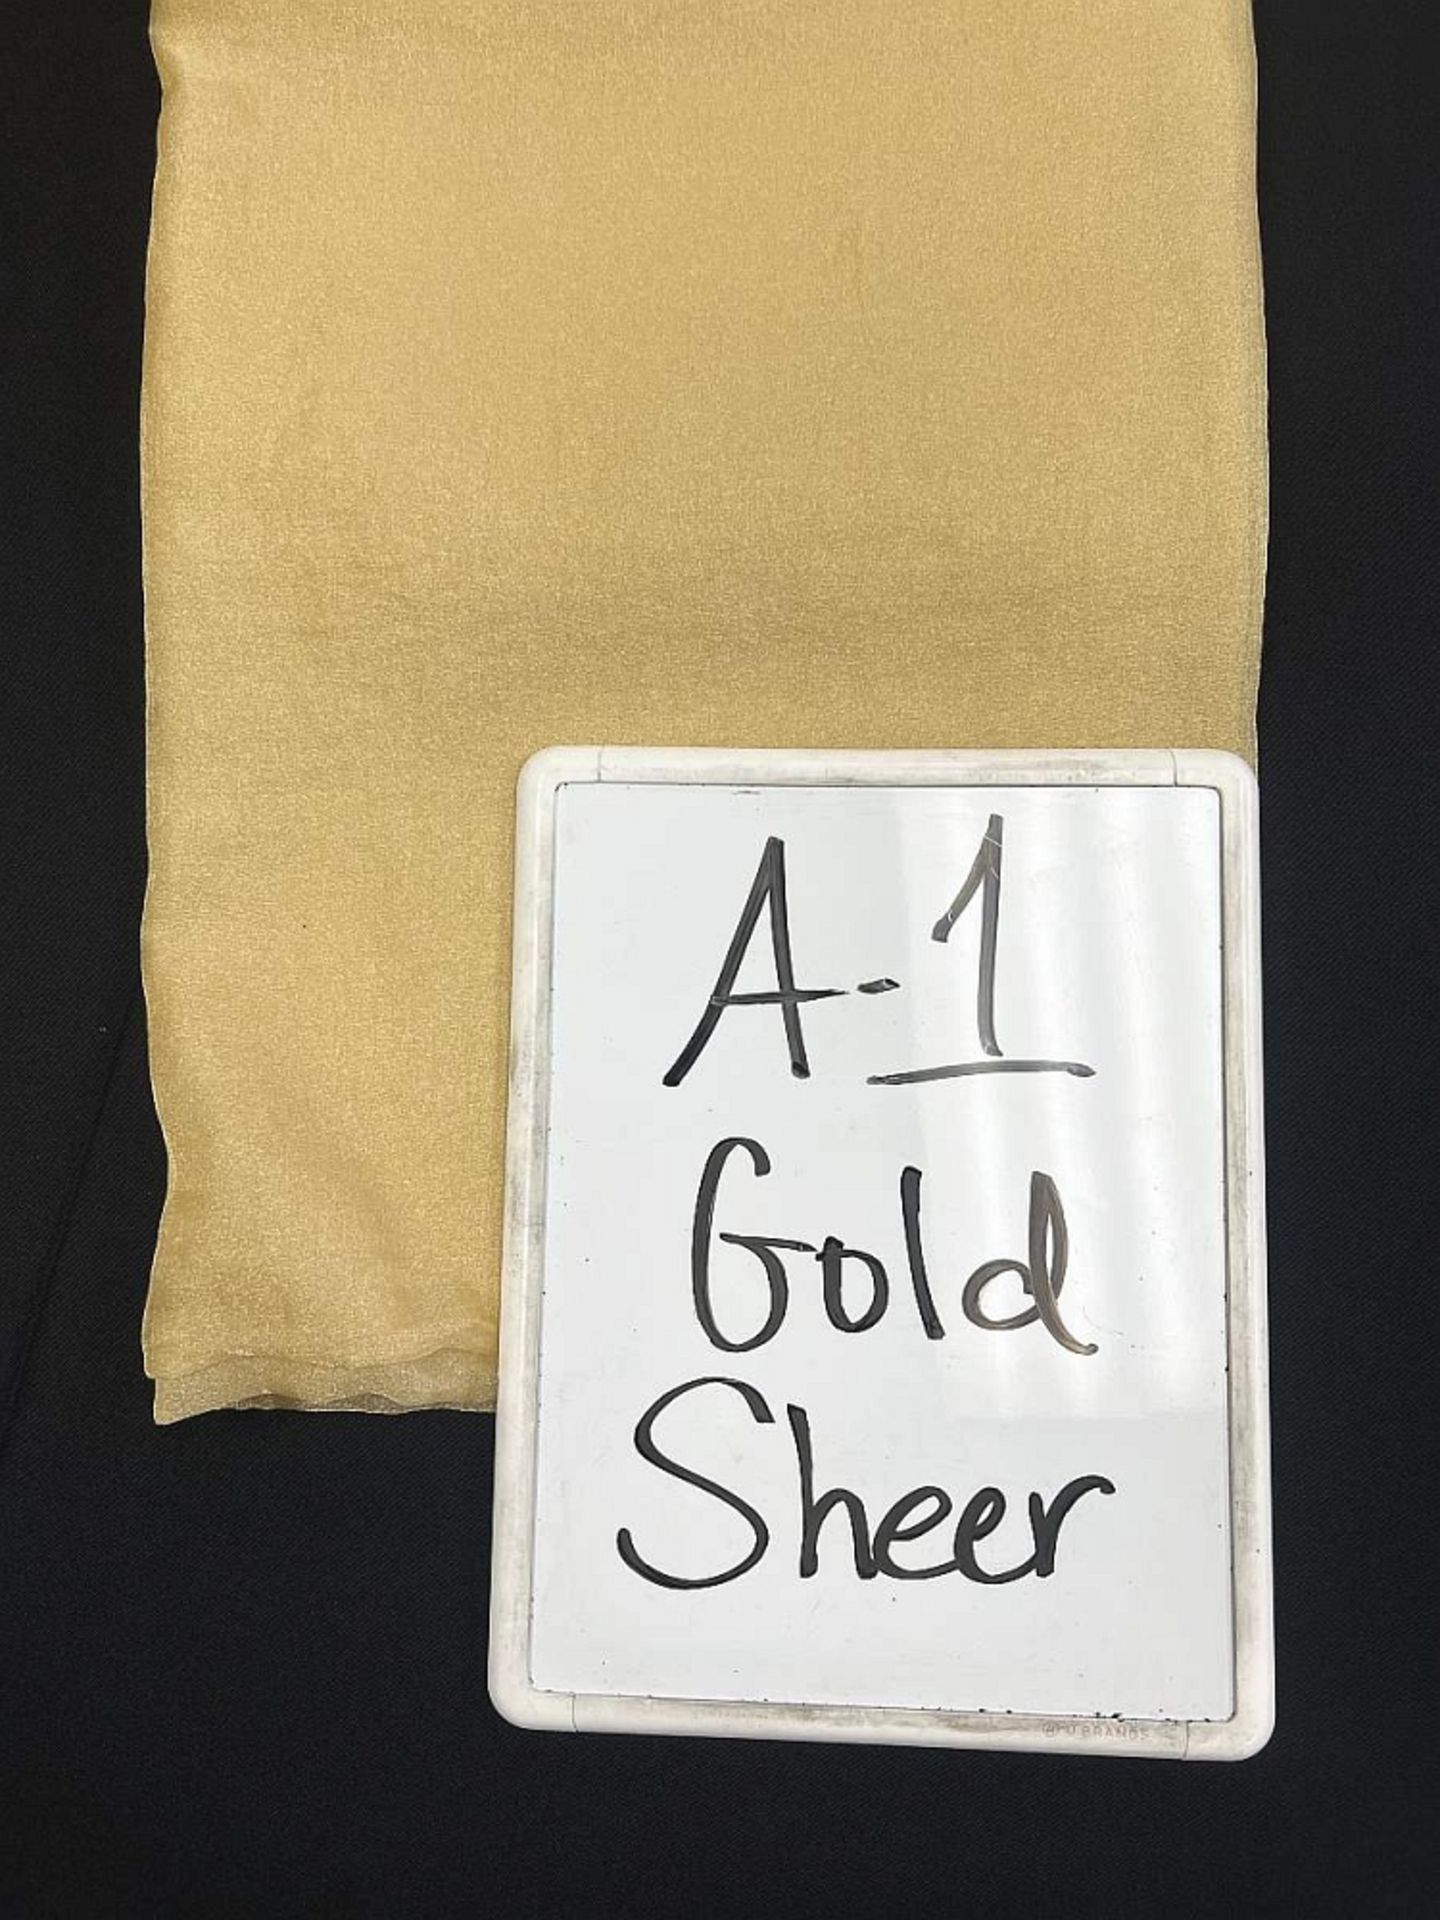 72" x 72" A-1 Gold Shear